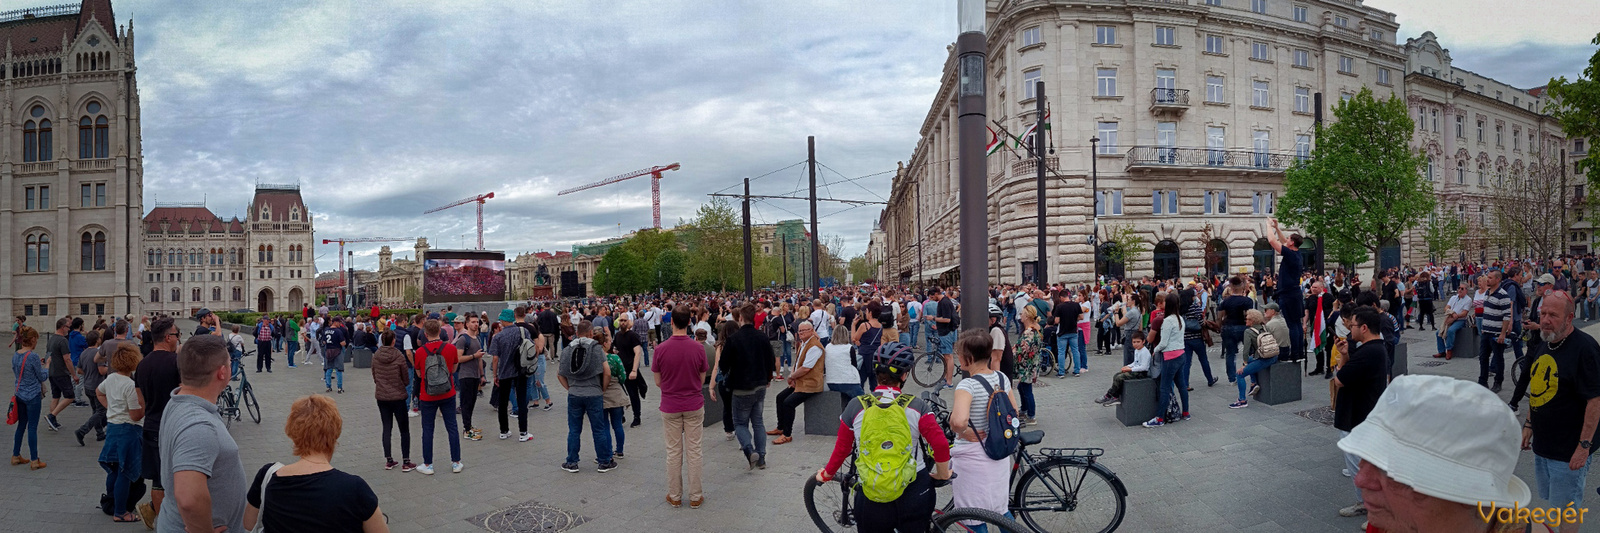 Magyar P tüntetés - egy órával kezdés előtt